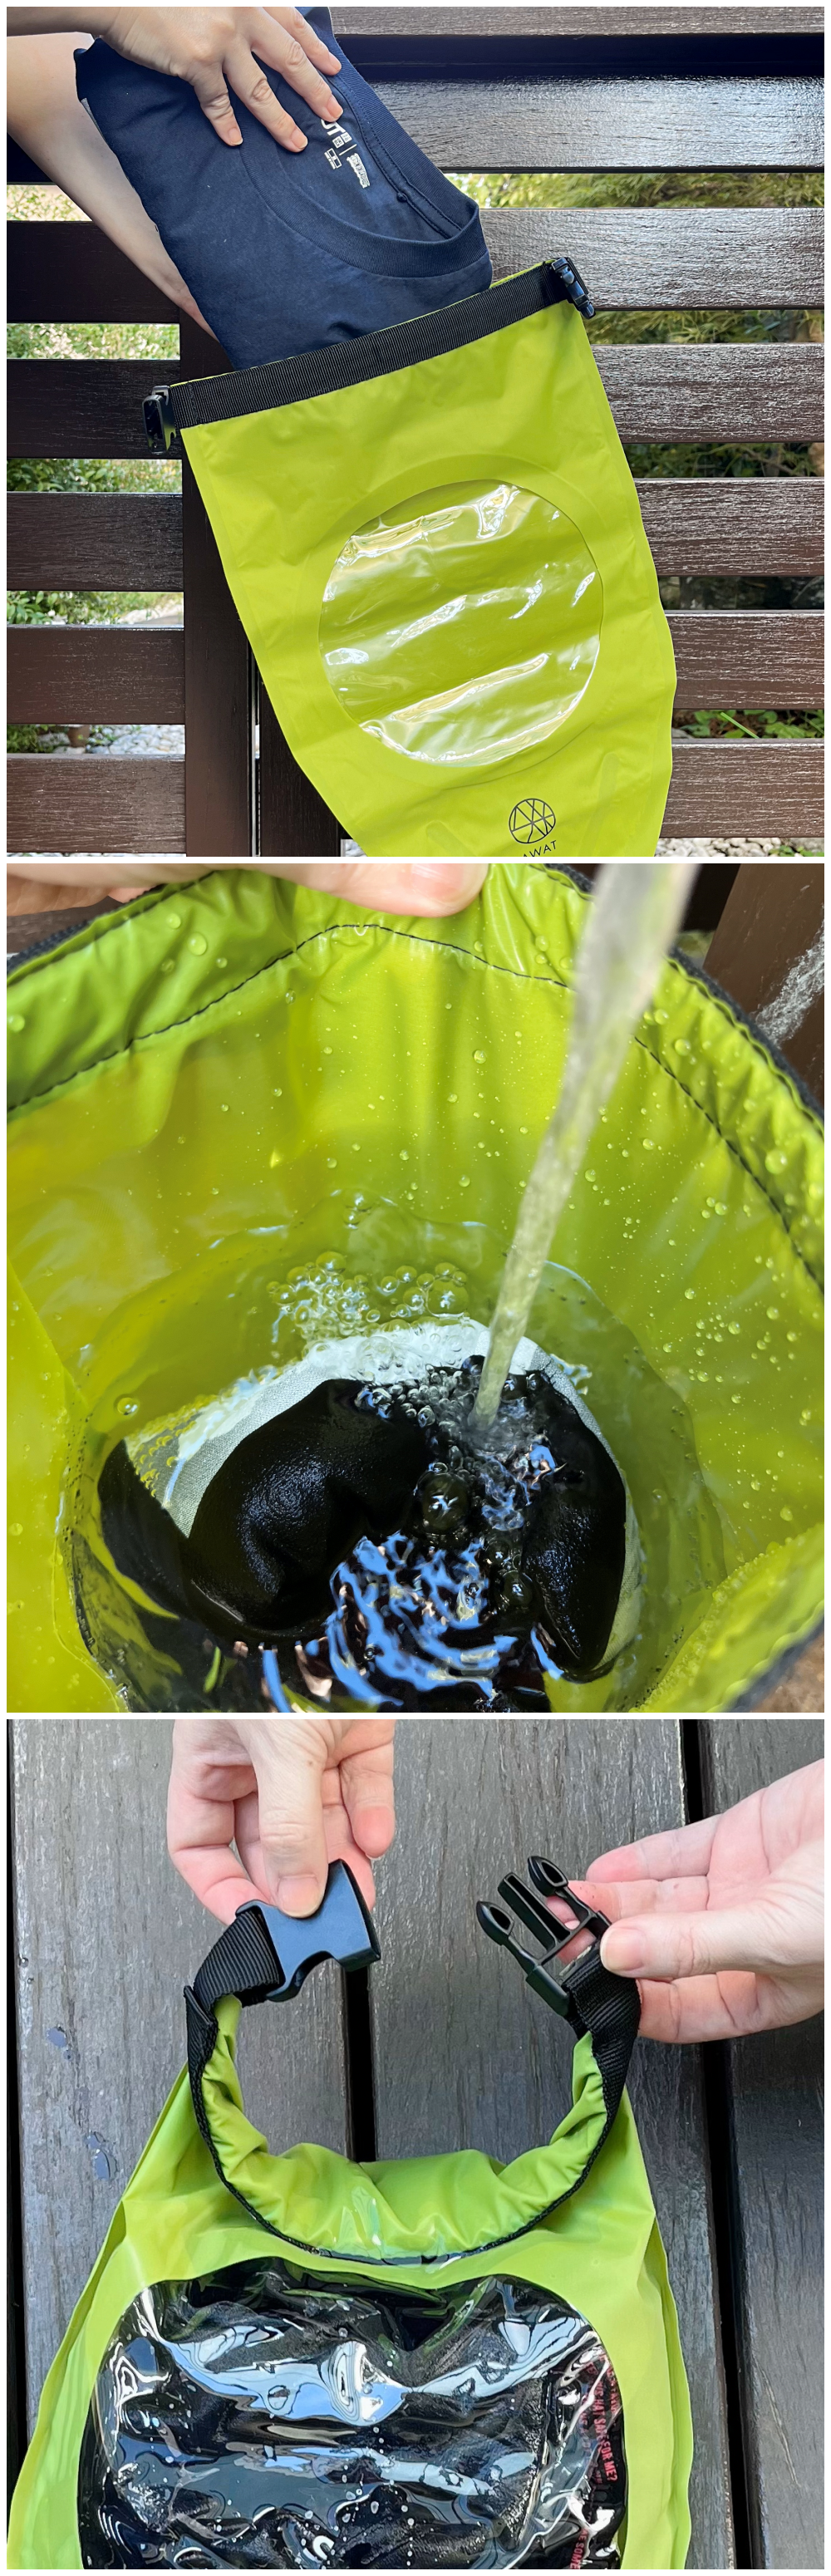 NITORI（ニトリ）で見つけたおすすめ洗濯アイテム「シャカシャカウォッシュバッグ3L AWAT」